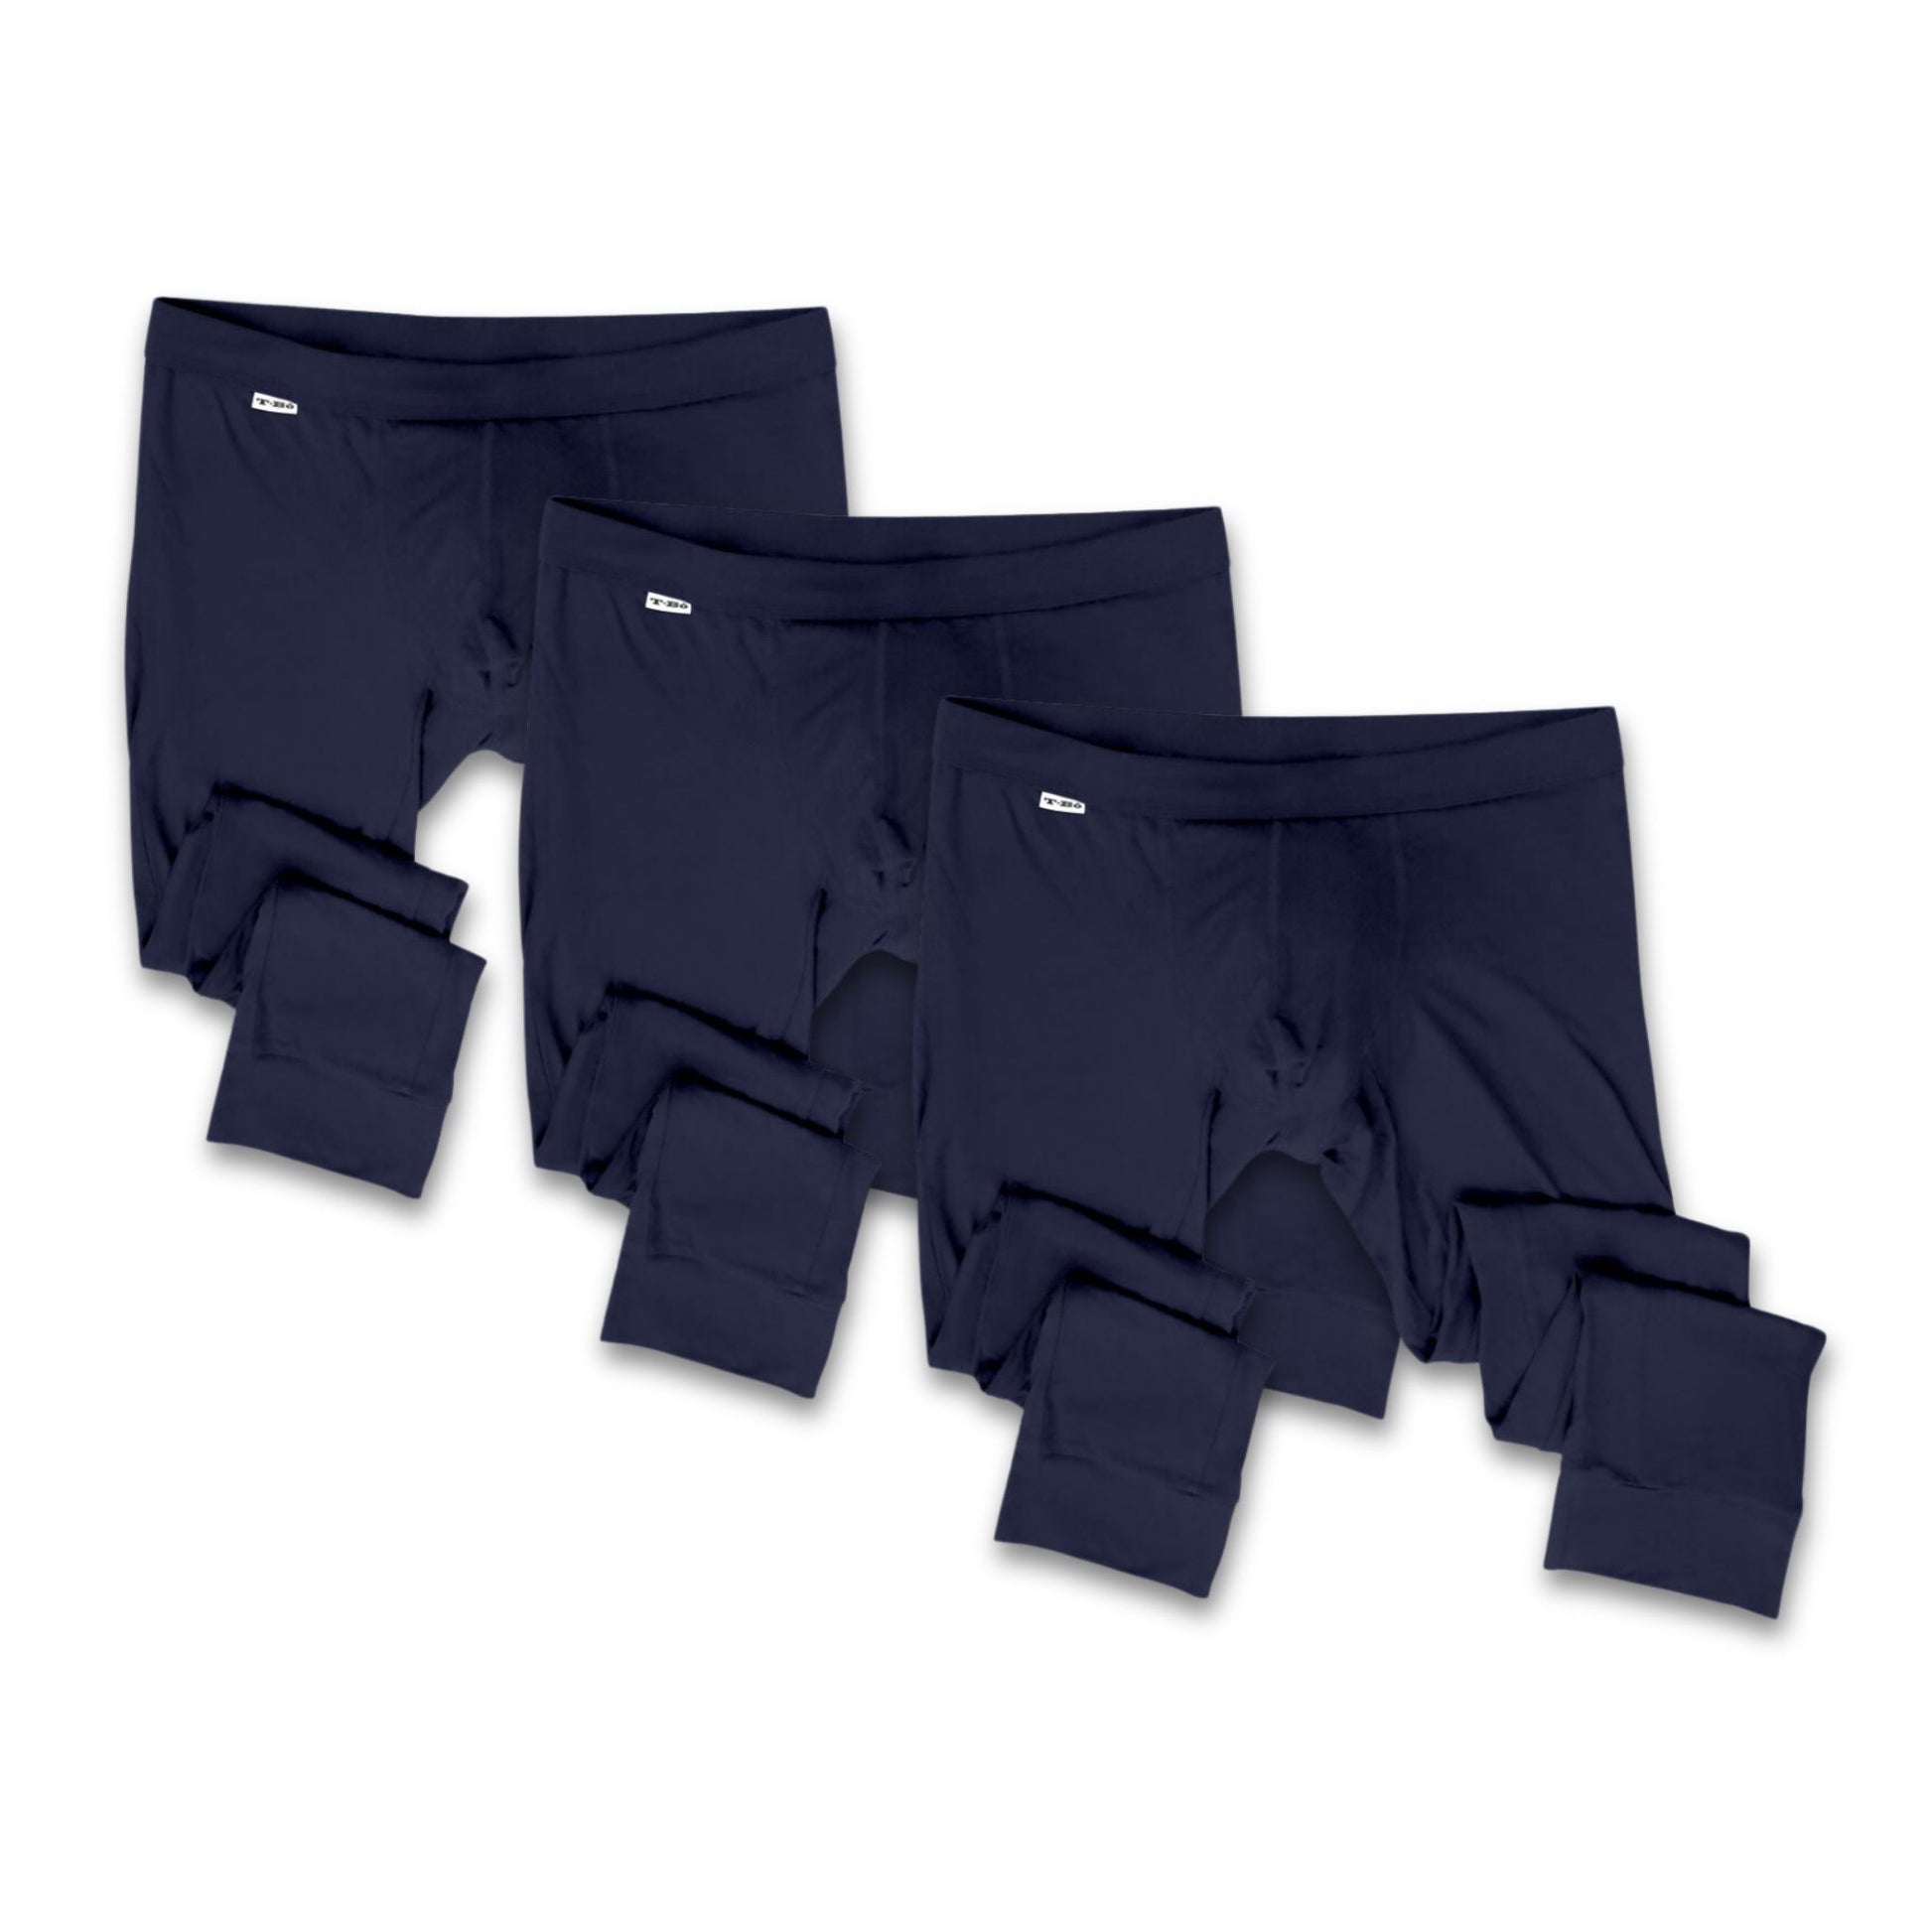 Navy Long John Set, Bamboo Thermal Underwear